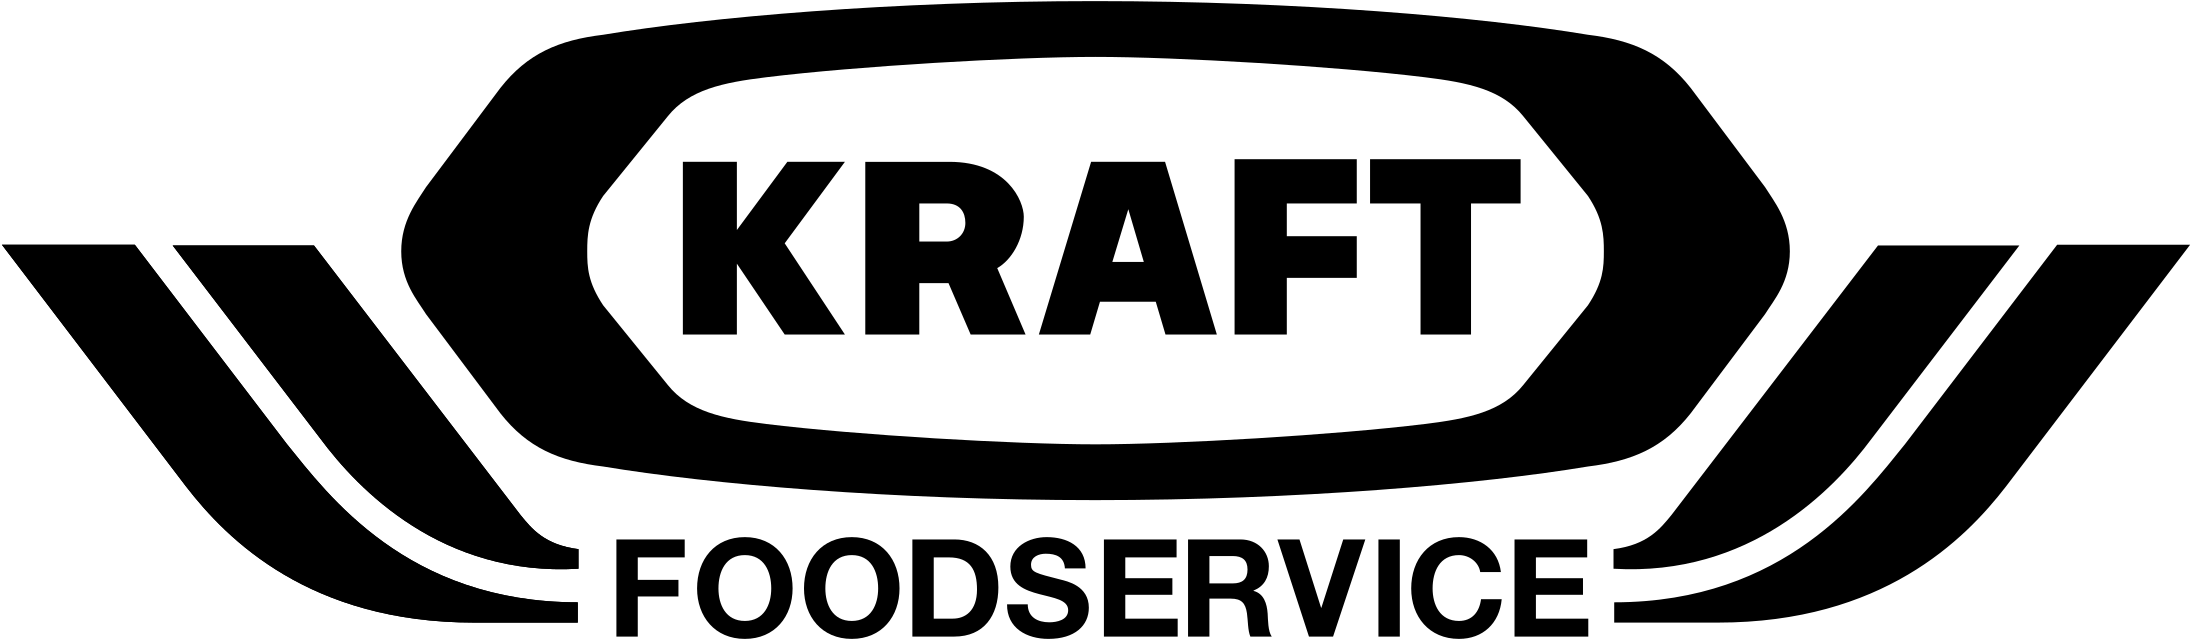 Kraft Food Service Logo Png Transparent - Kraft Foods (2400x2400), Png Download